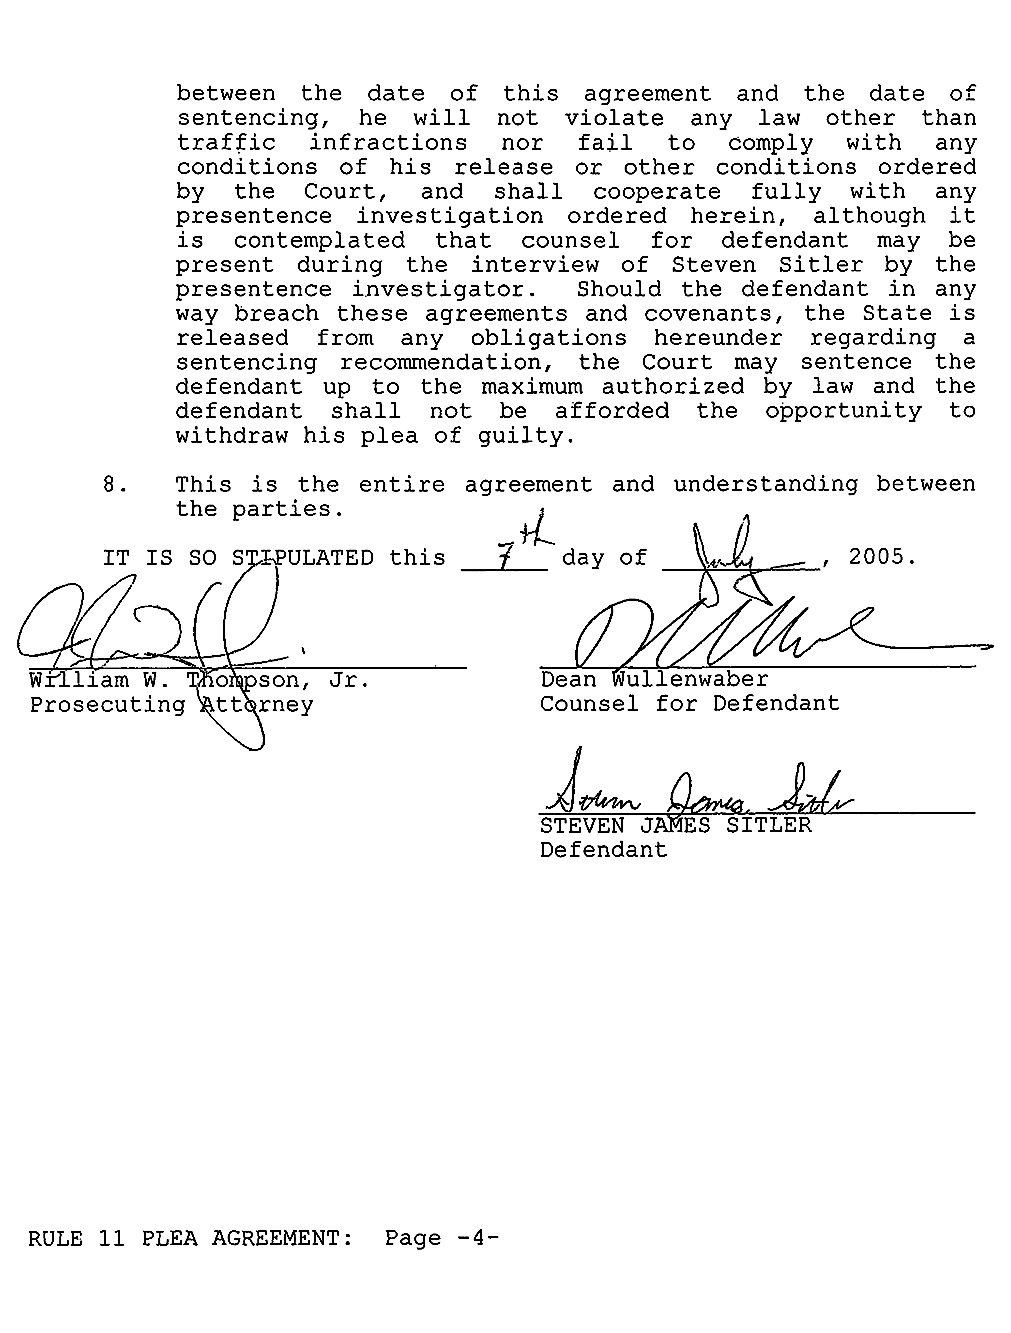 Steven Sitler: Rule 11 Plea Agreement, page 4